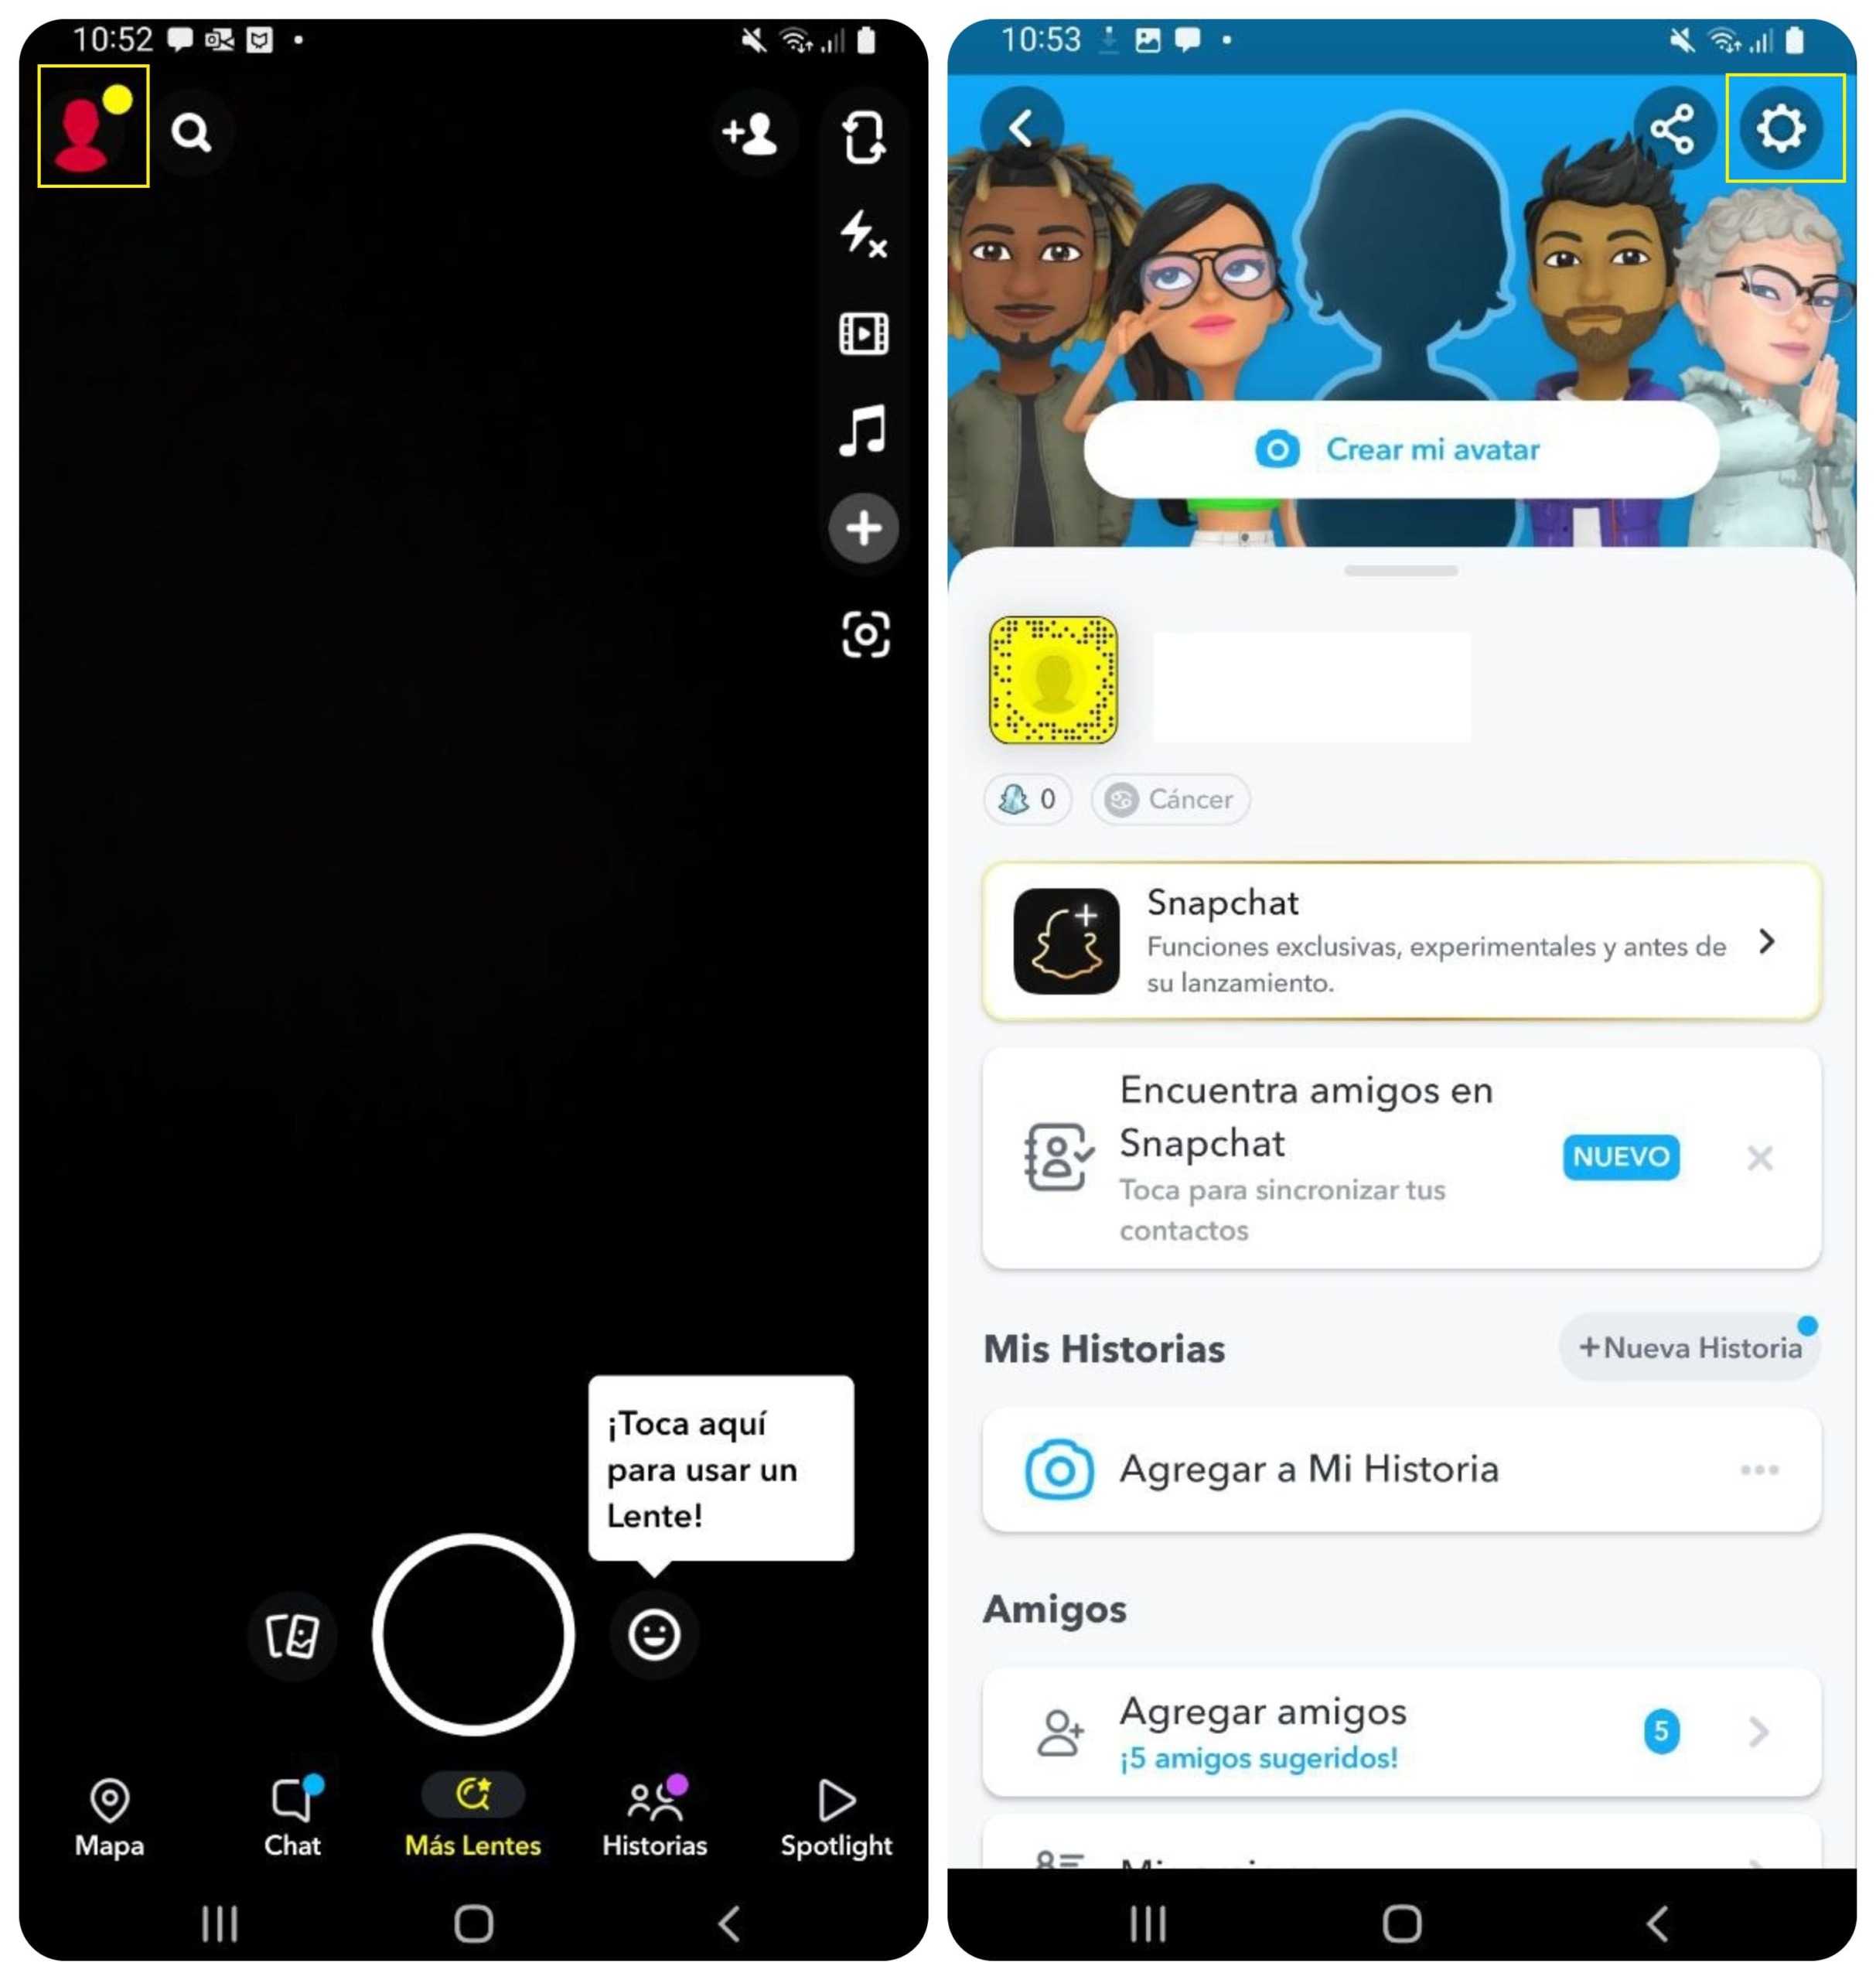 capturas de pantalla de la activacion de la aplicacion para compartir su ubicacion con amigos utilizando la camara